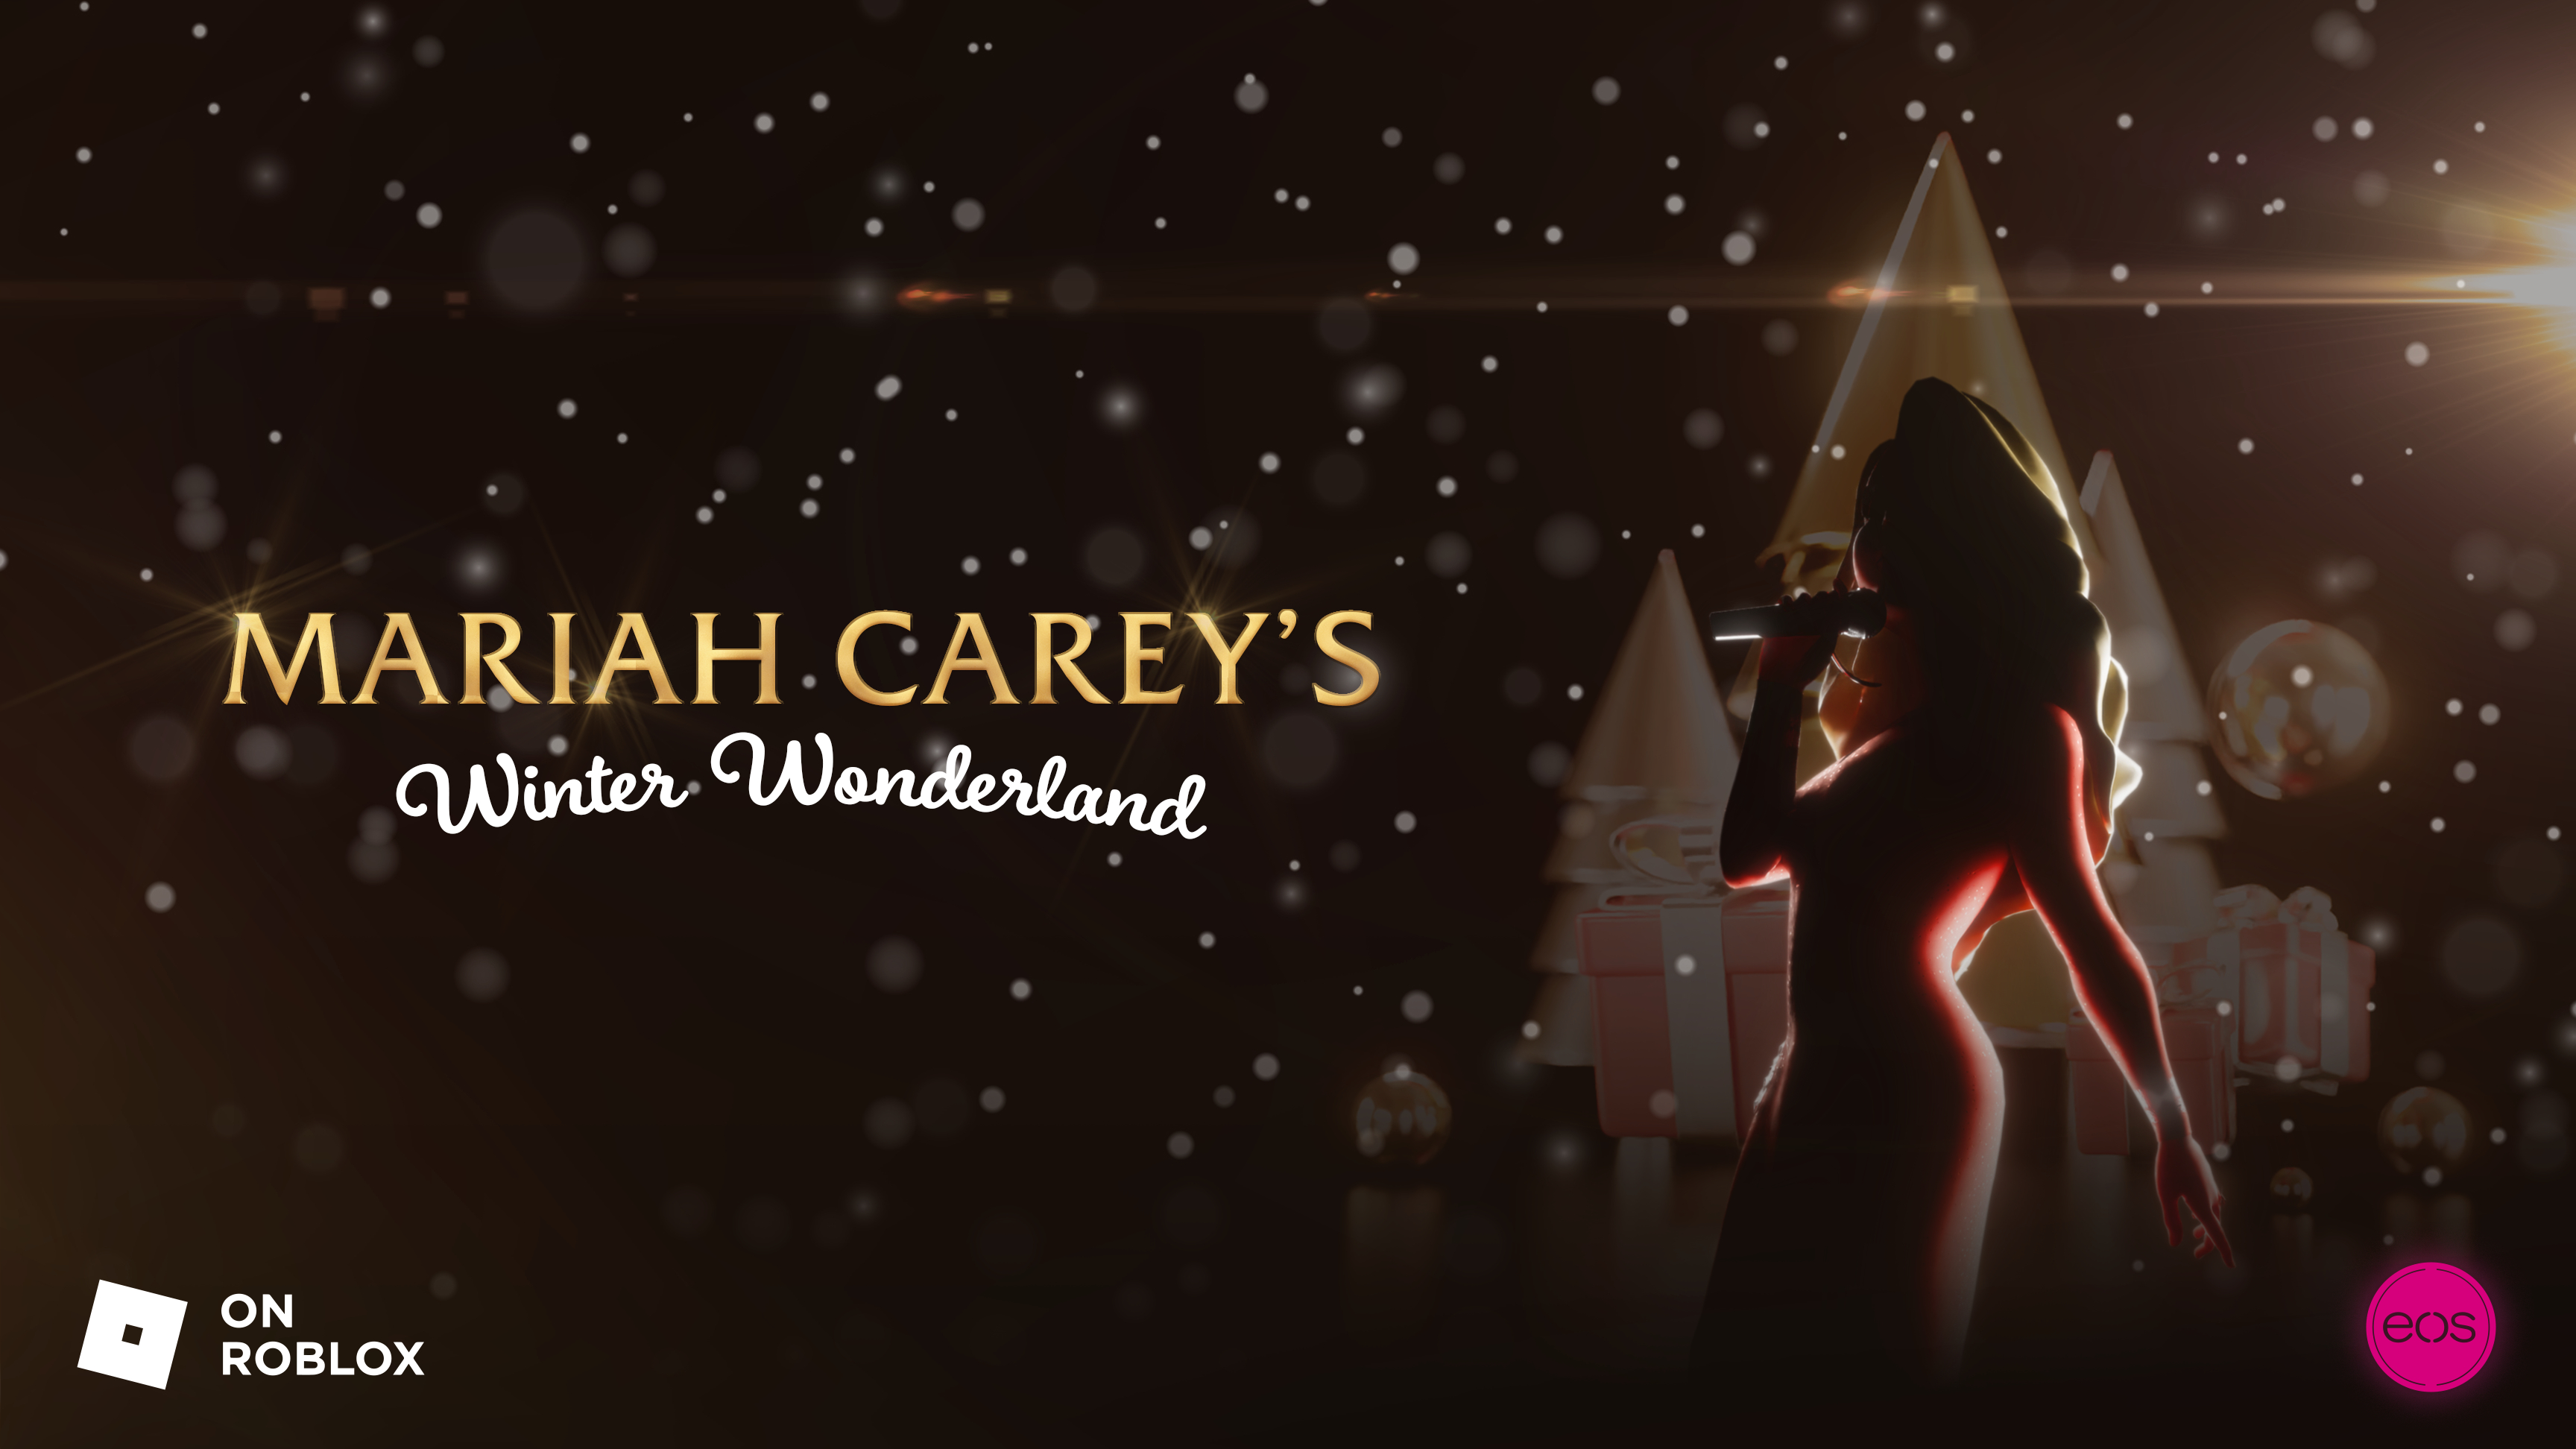 Mariah Carey Winter Wonderland logo